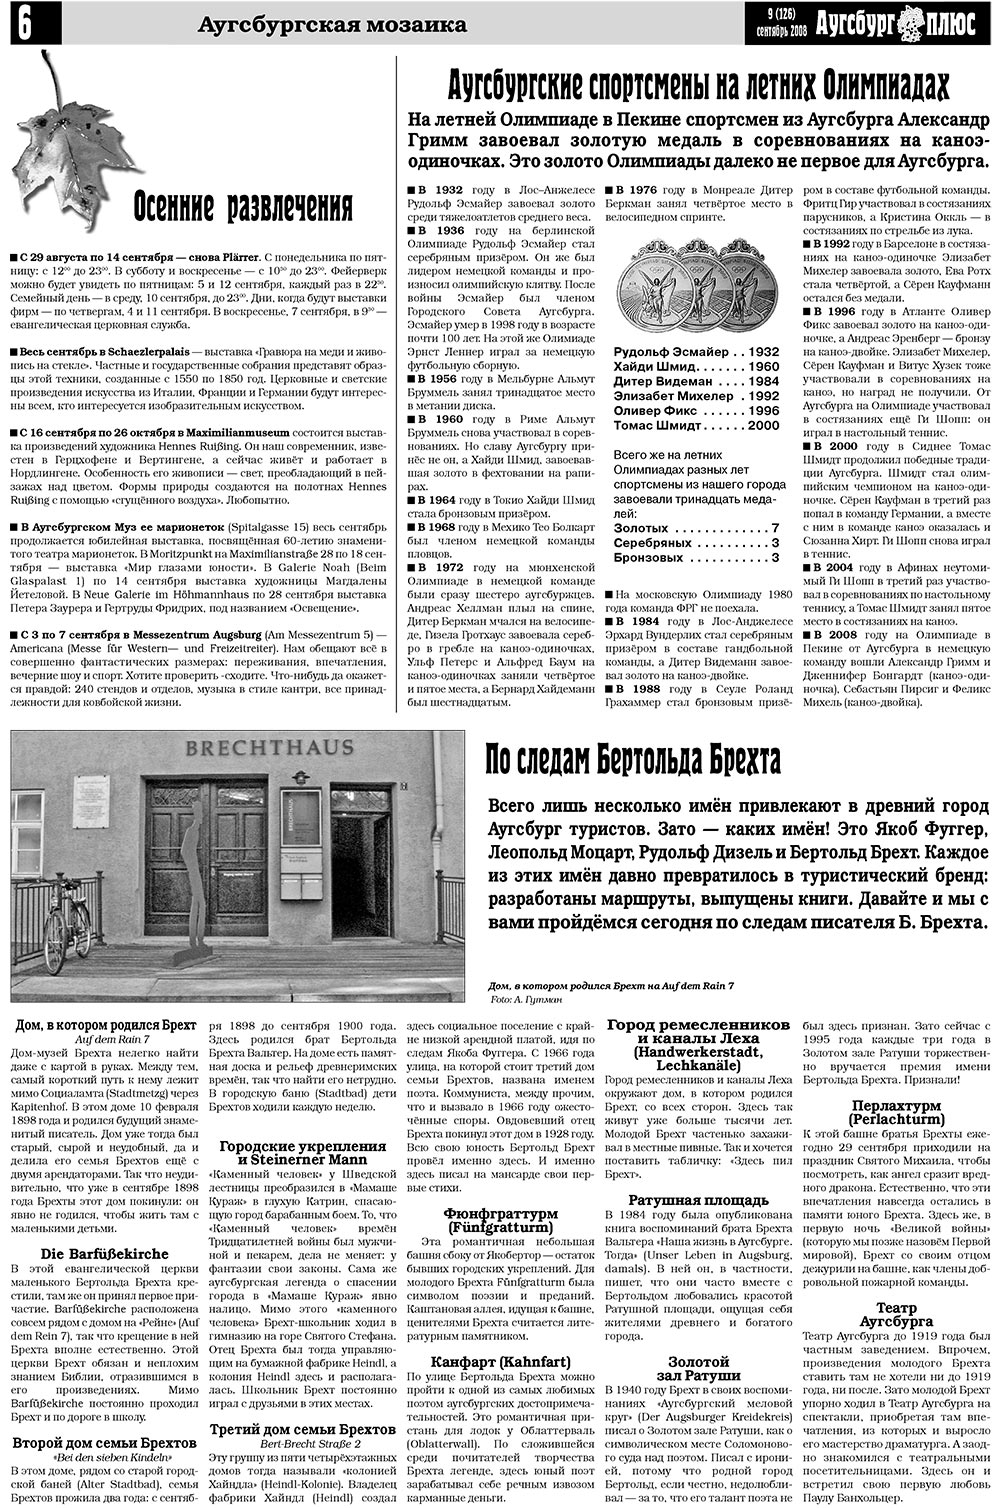 Германия плюс, газета. 2008 №9 стр.8